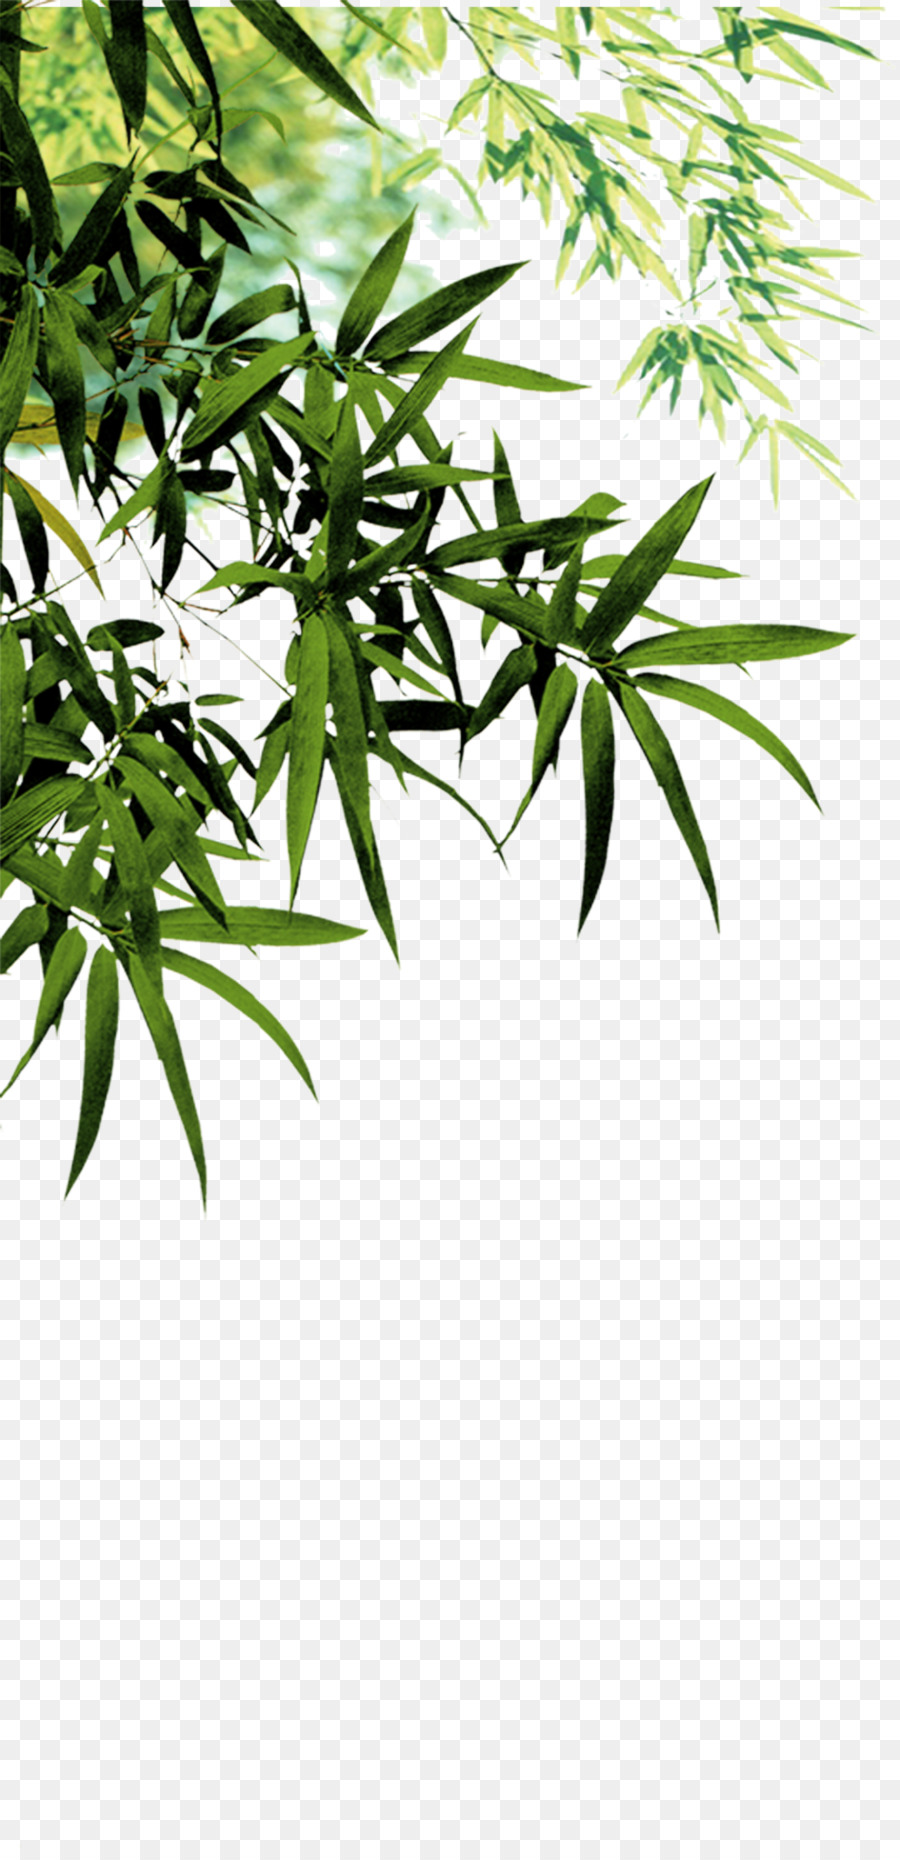 Anji Contea di Bambù del carbone di Software - foglie di bambù